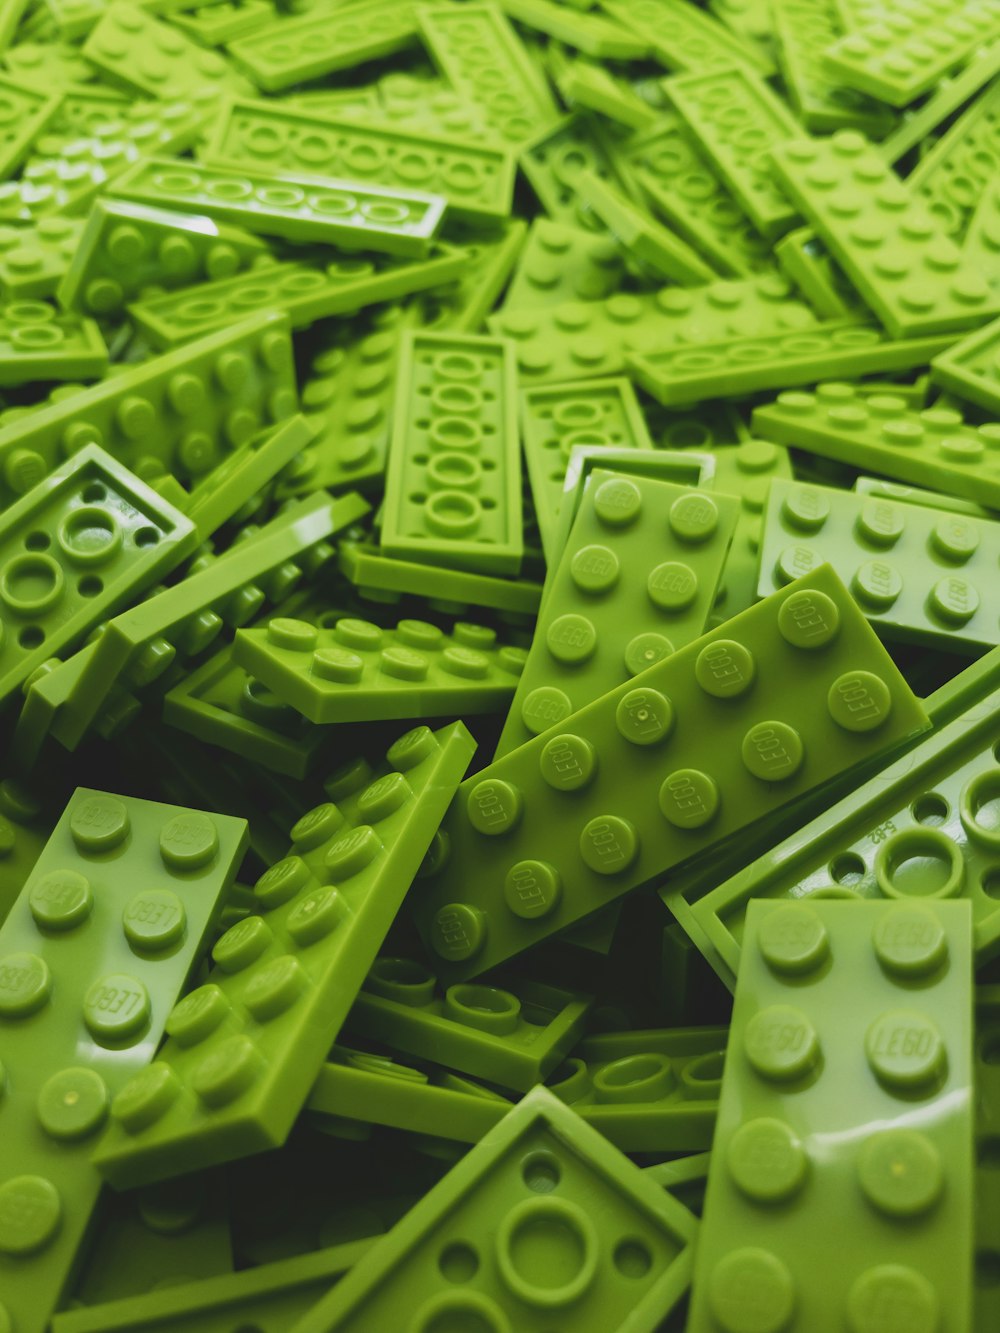 lot de blocs Lego vert